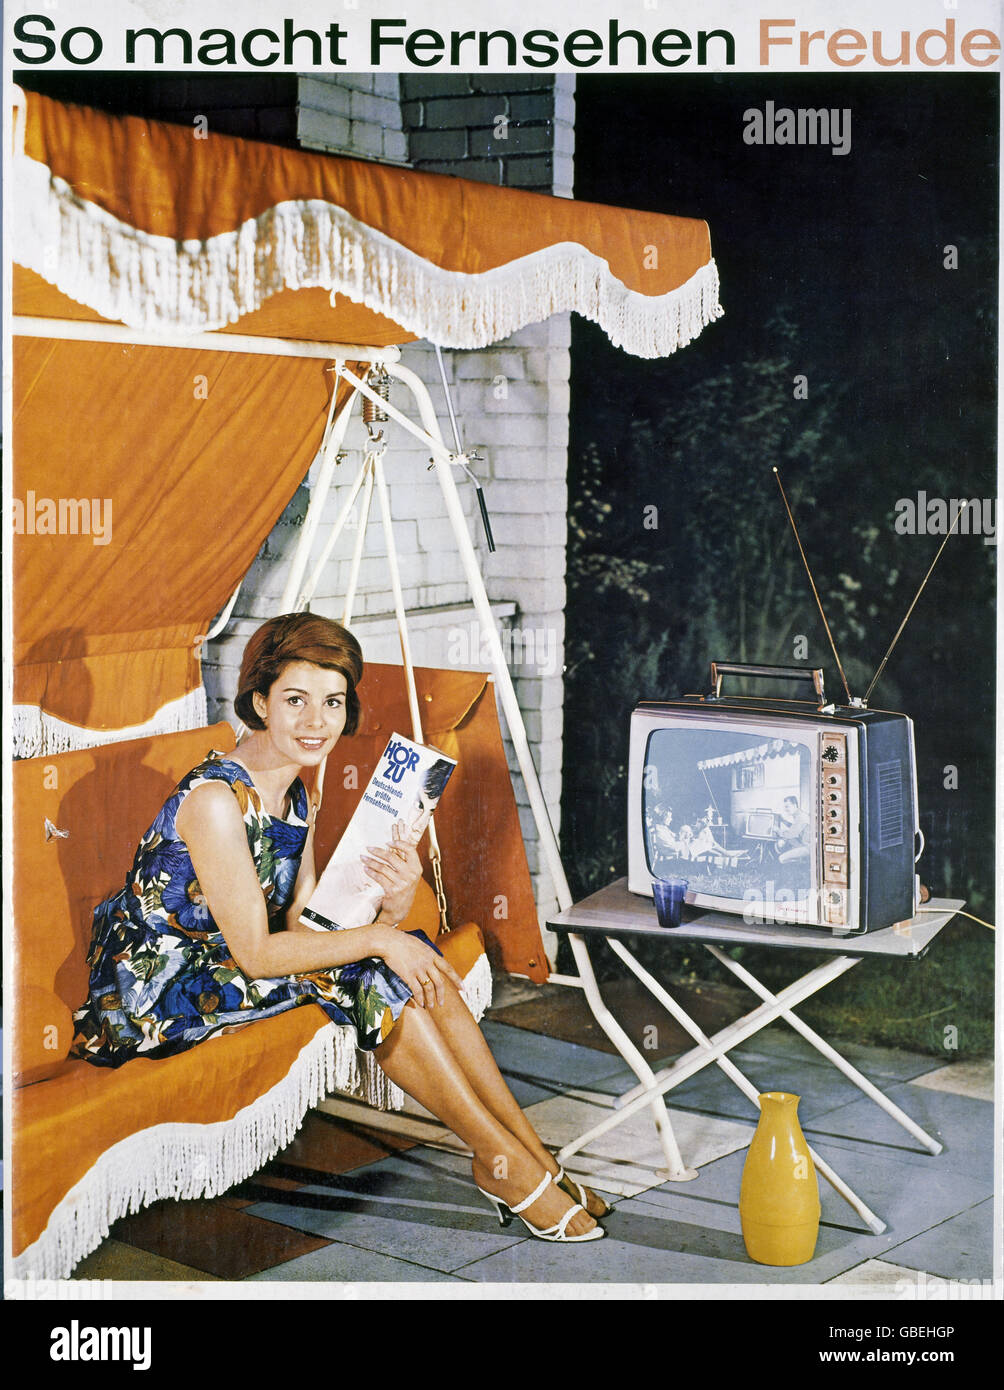 Publicité, télévision, publicité pour Grundig, femme avec 'Hoerzu' sur un hamac de swing, 1963, droits additionnels-Clearences-non disponible Banque D'Images